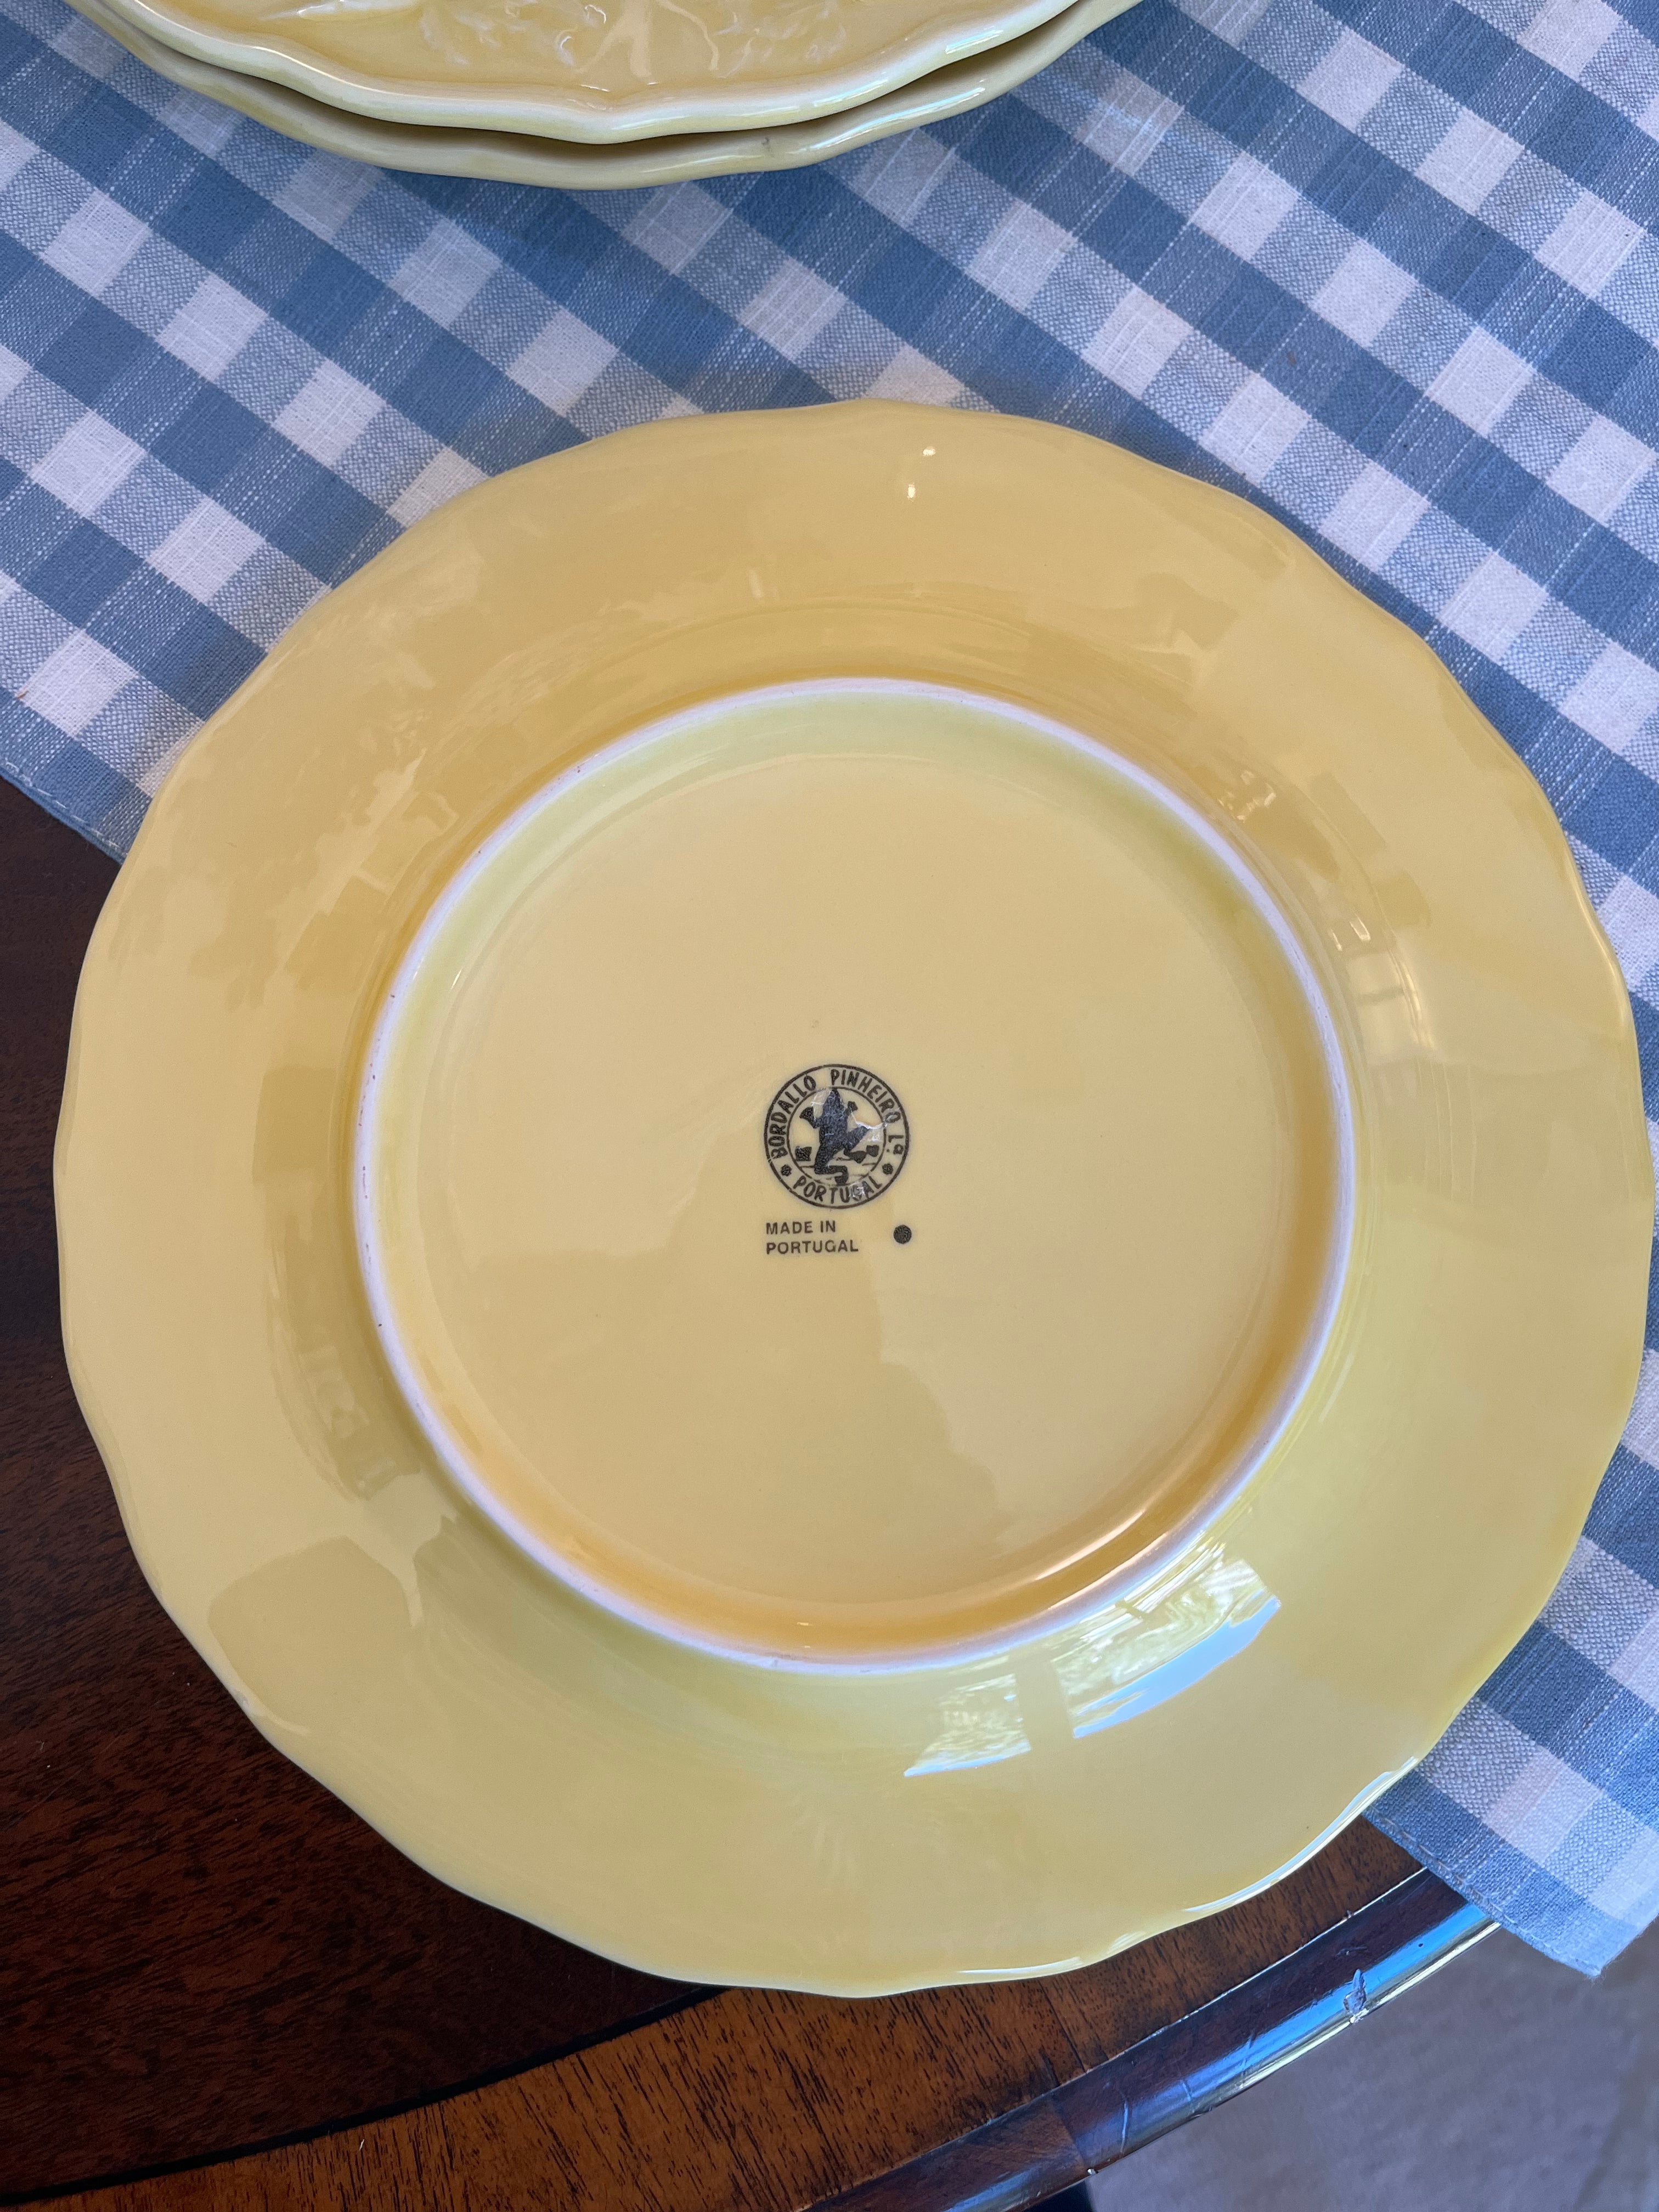 Bordallo Pinhiero Yellow Bunny Plates, 9" (Three Available)